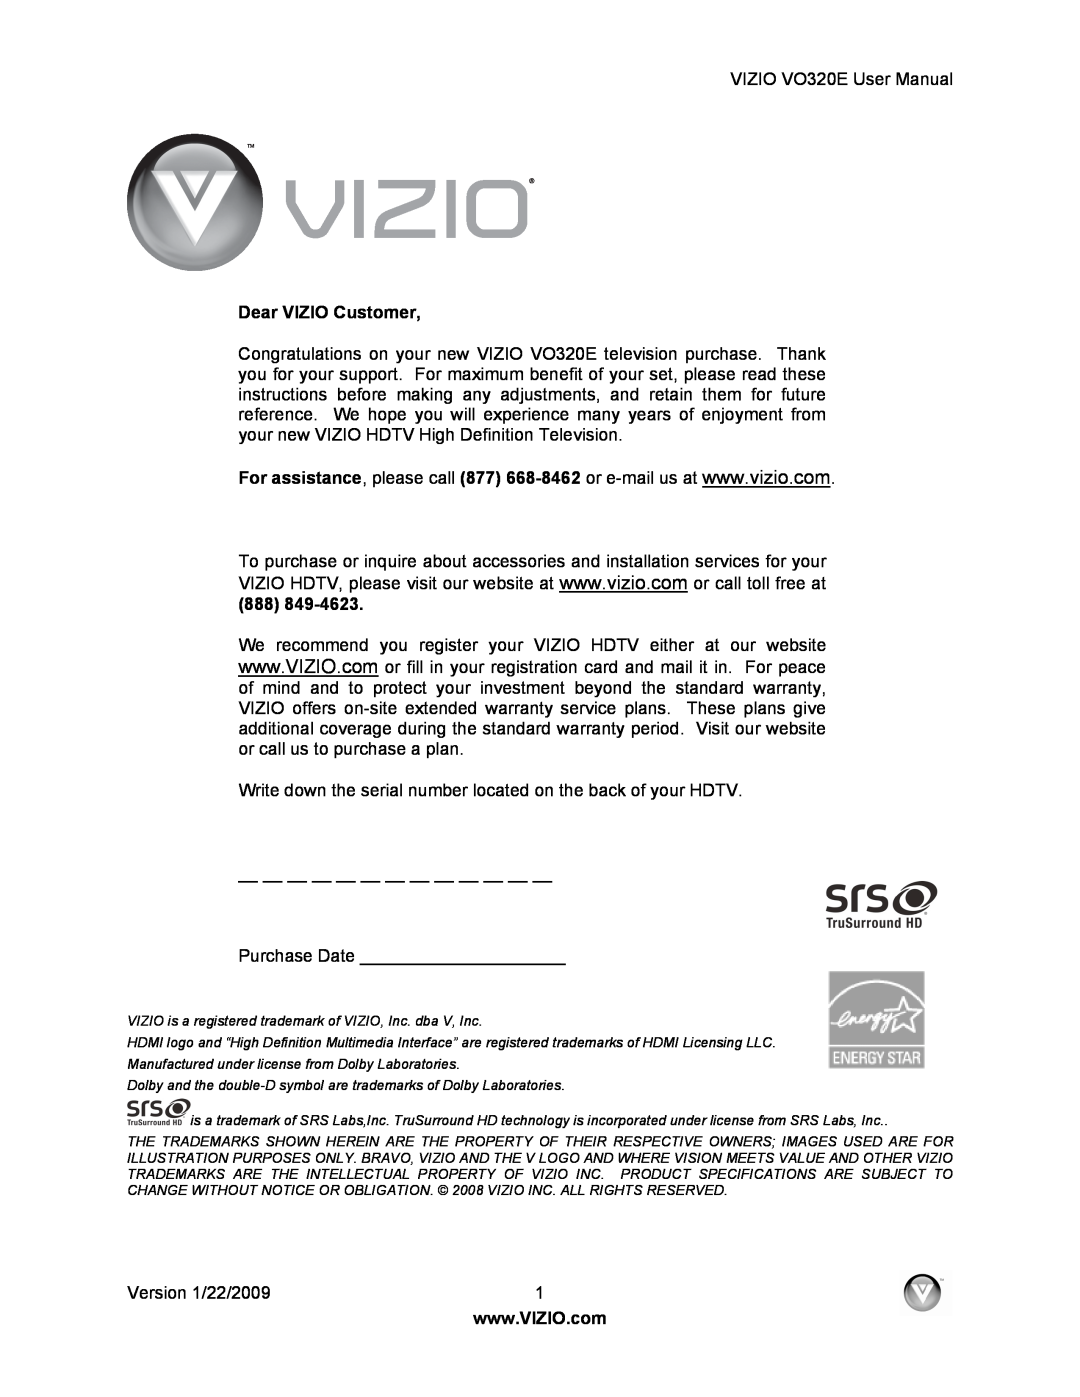 Vizio VO320E user manual Dear VIZIO Customer 